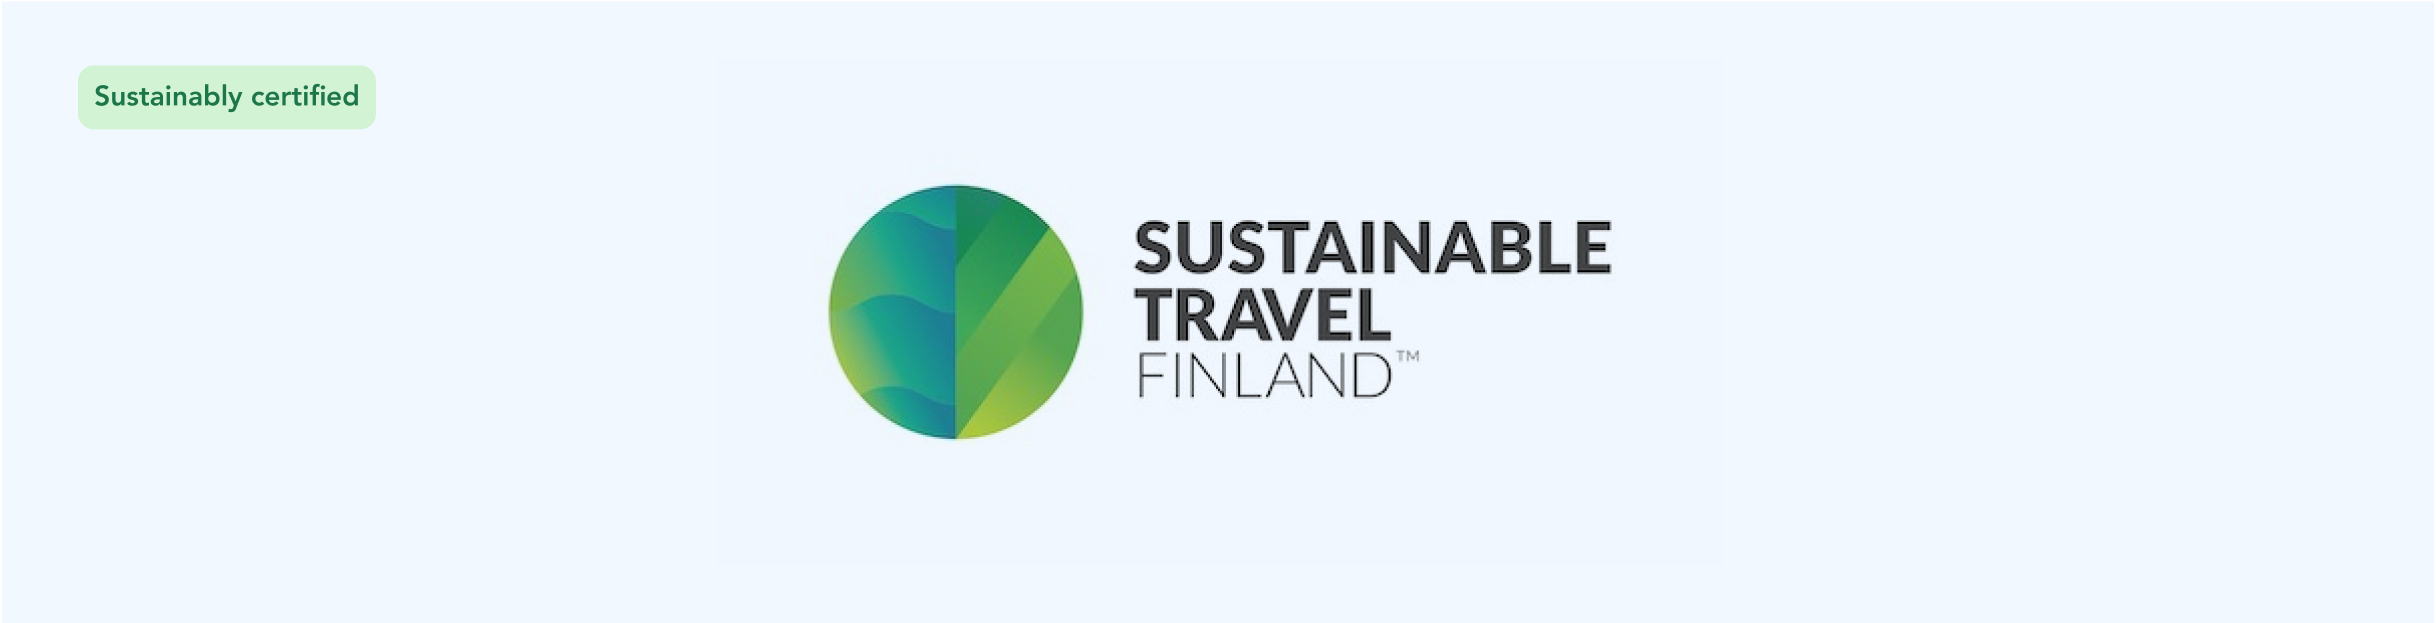 Логотип Sustainable Travel Finland